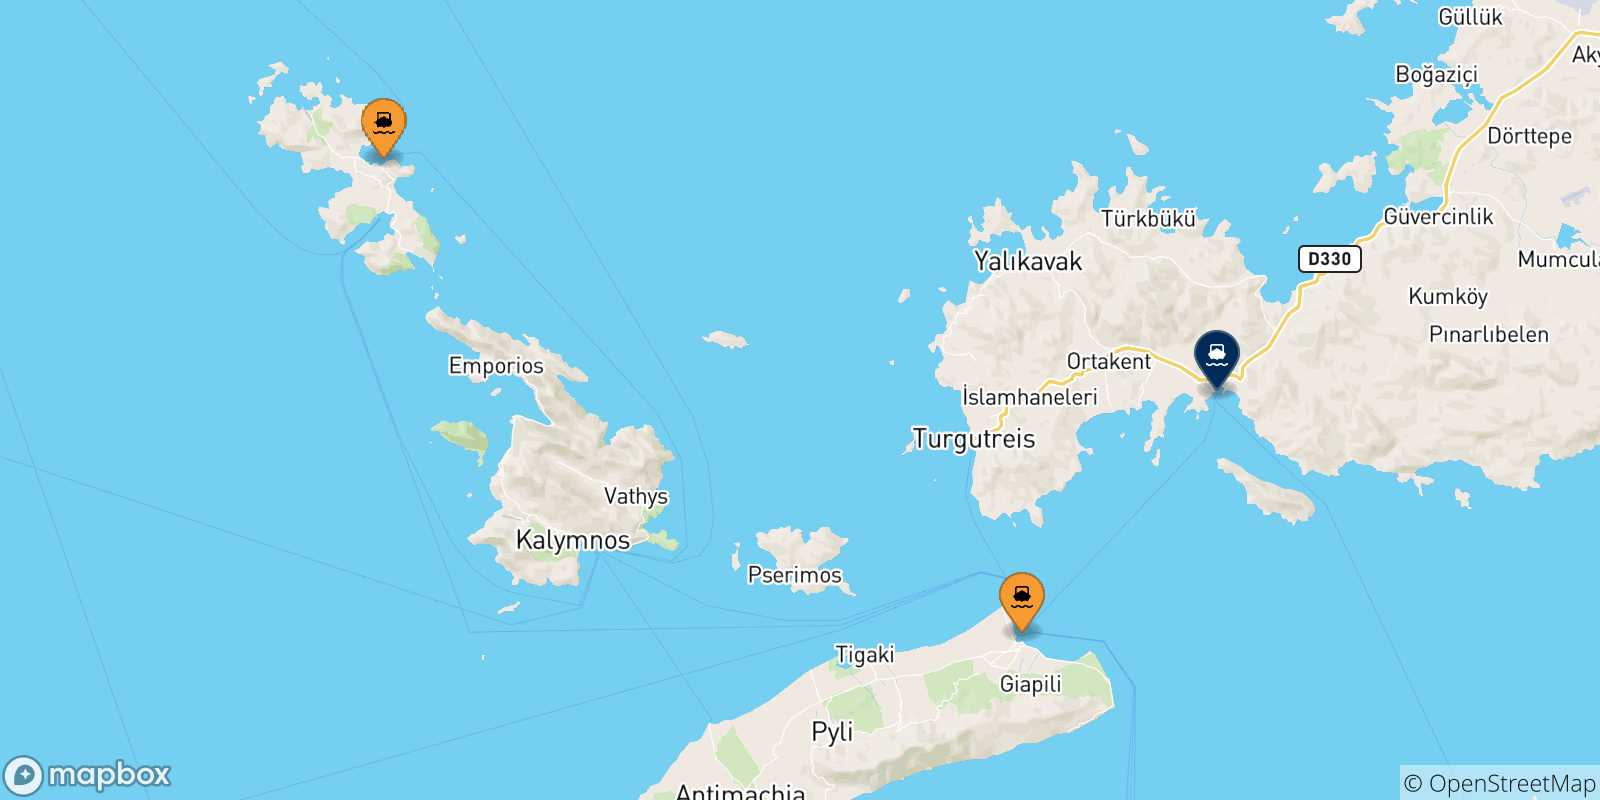 Mappa delle possibili rotte tra le Isole Dodecaneso e Turgutreis